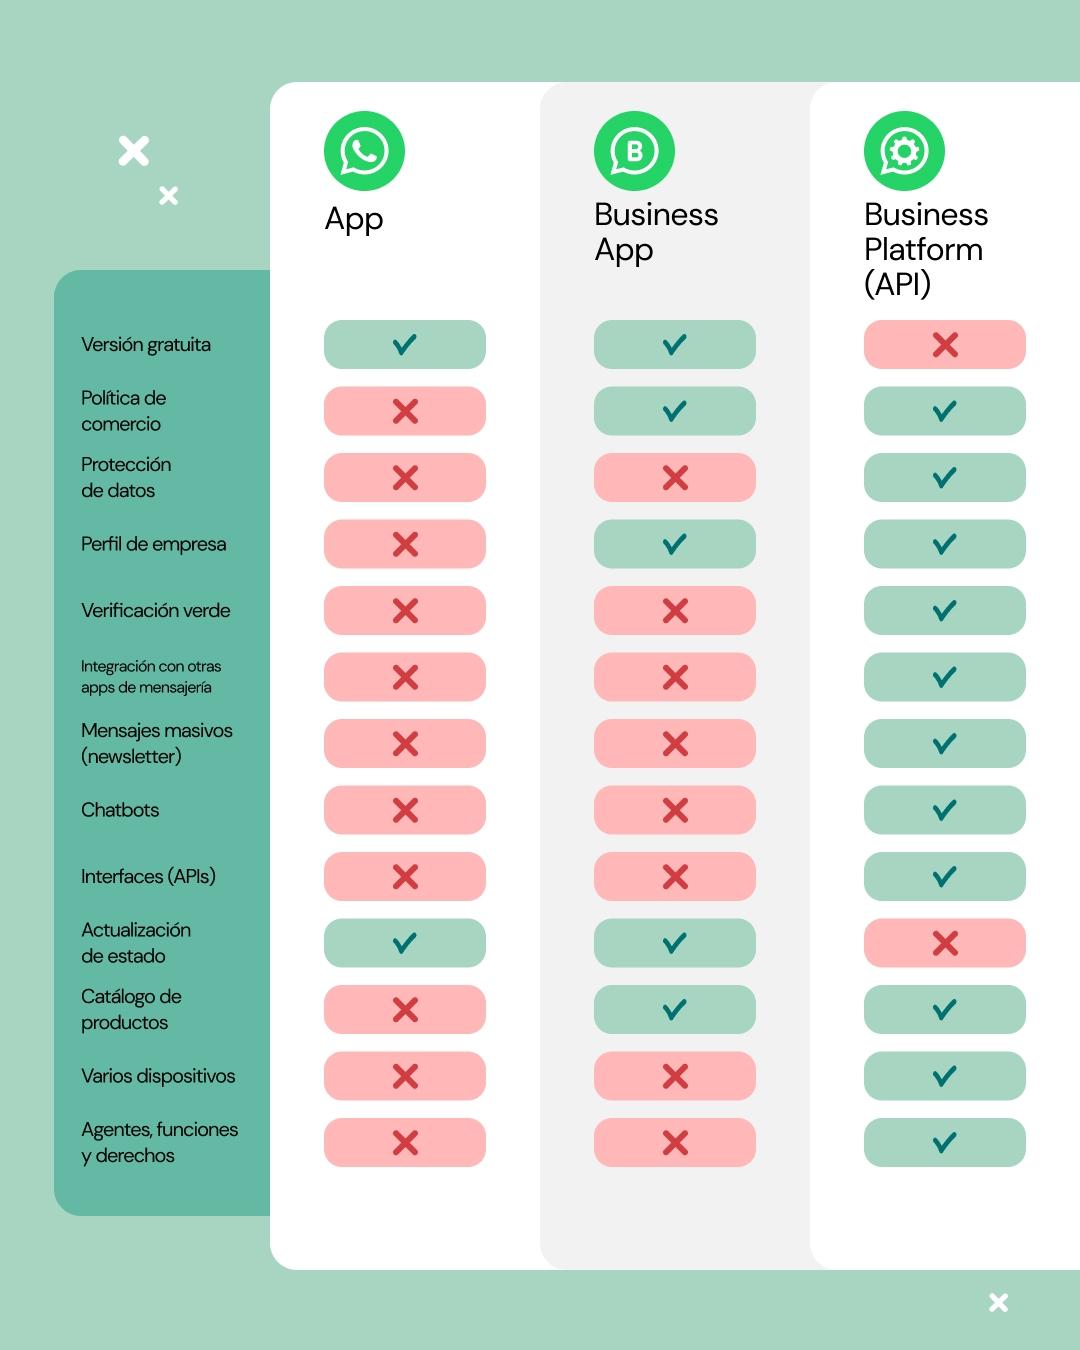 WhatsApp Platforms Comparison Graphic - ES - 4-5 